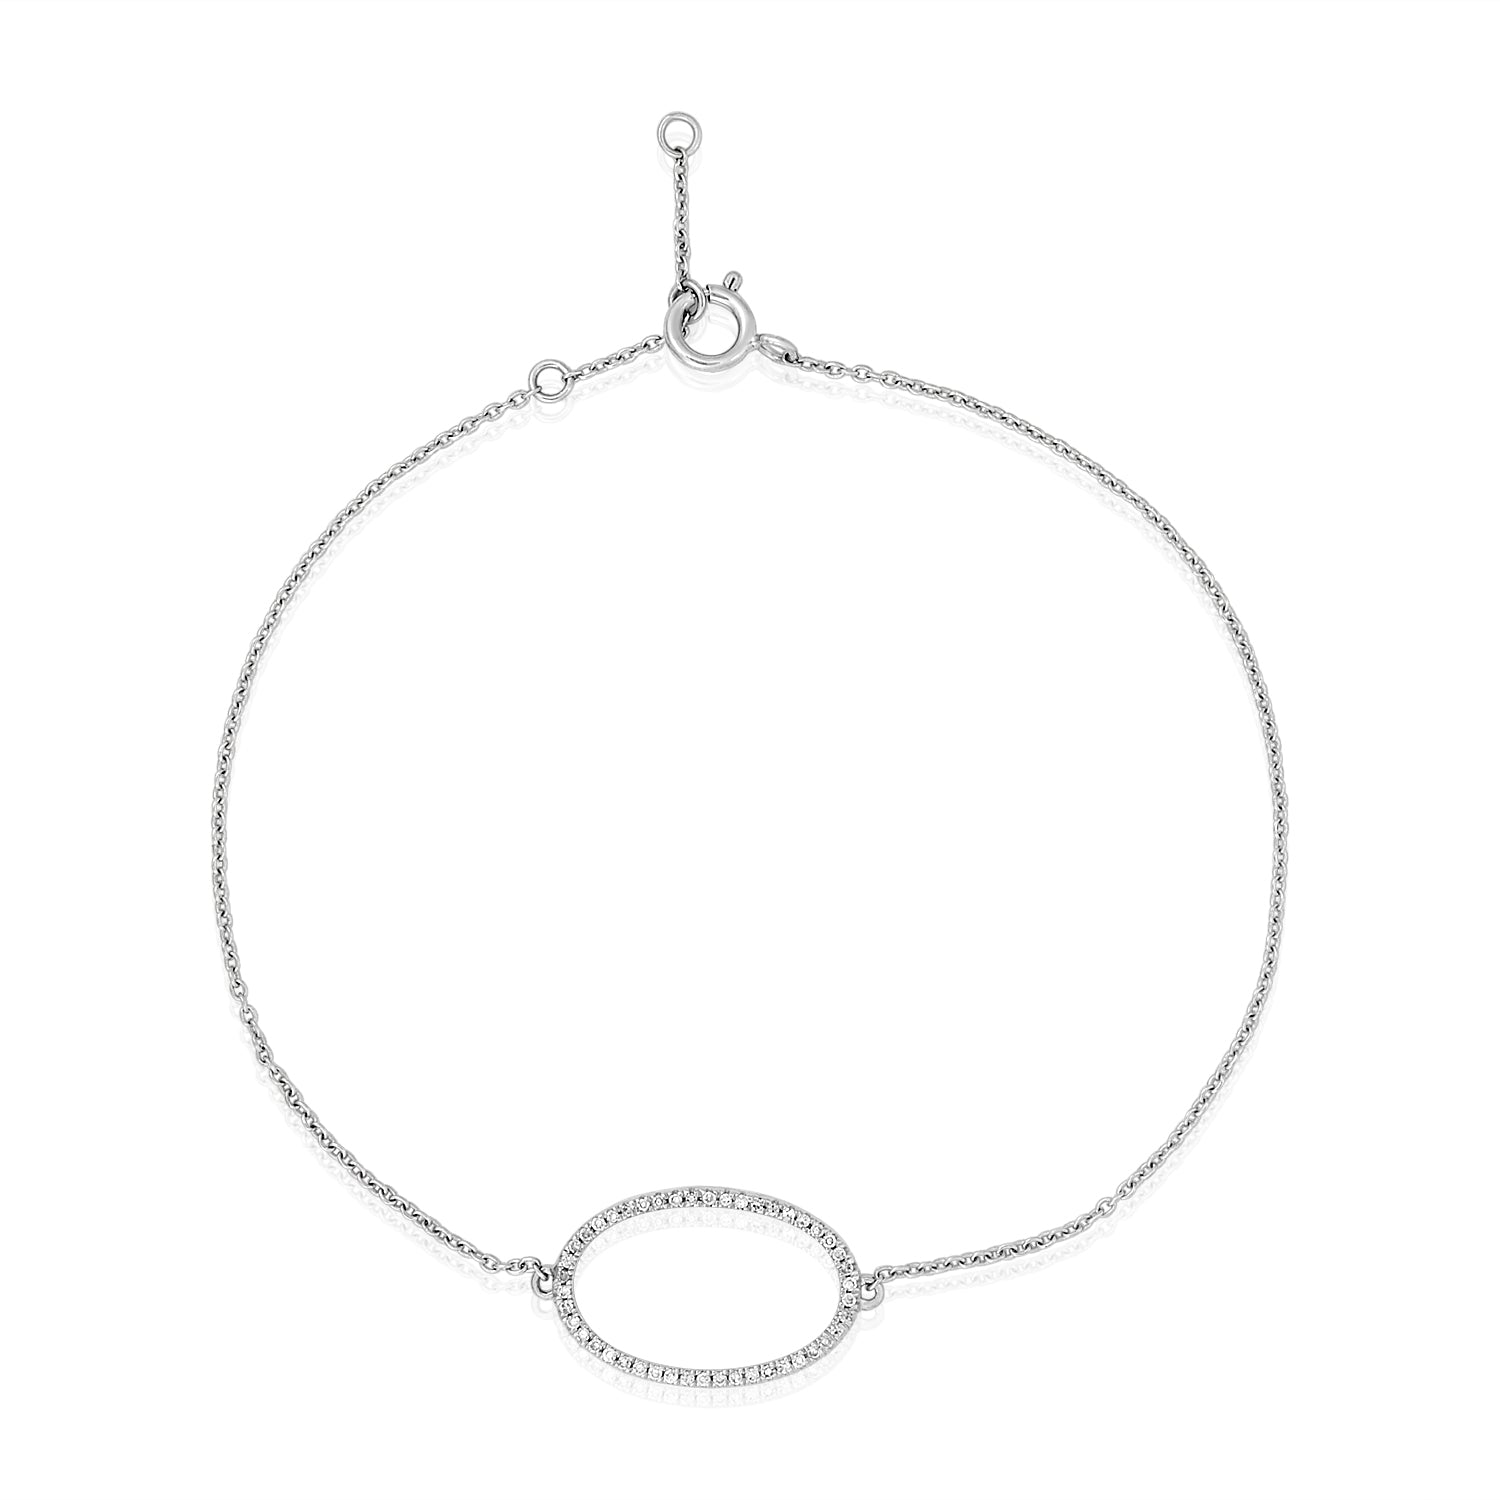 Oval Diamond Thin Chain Bracelet in 14k